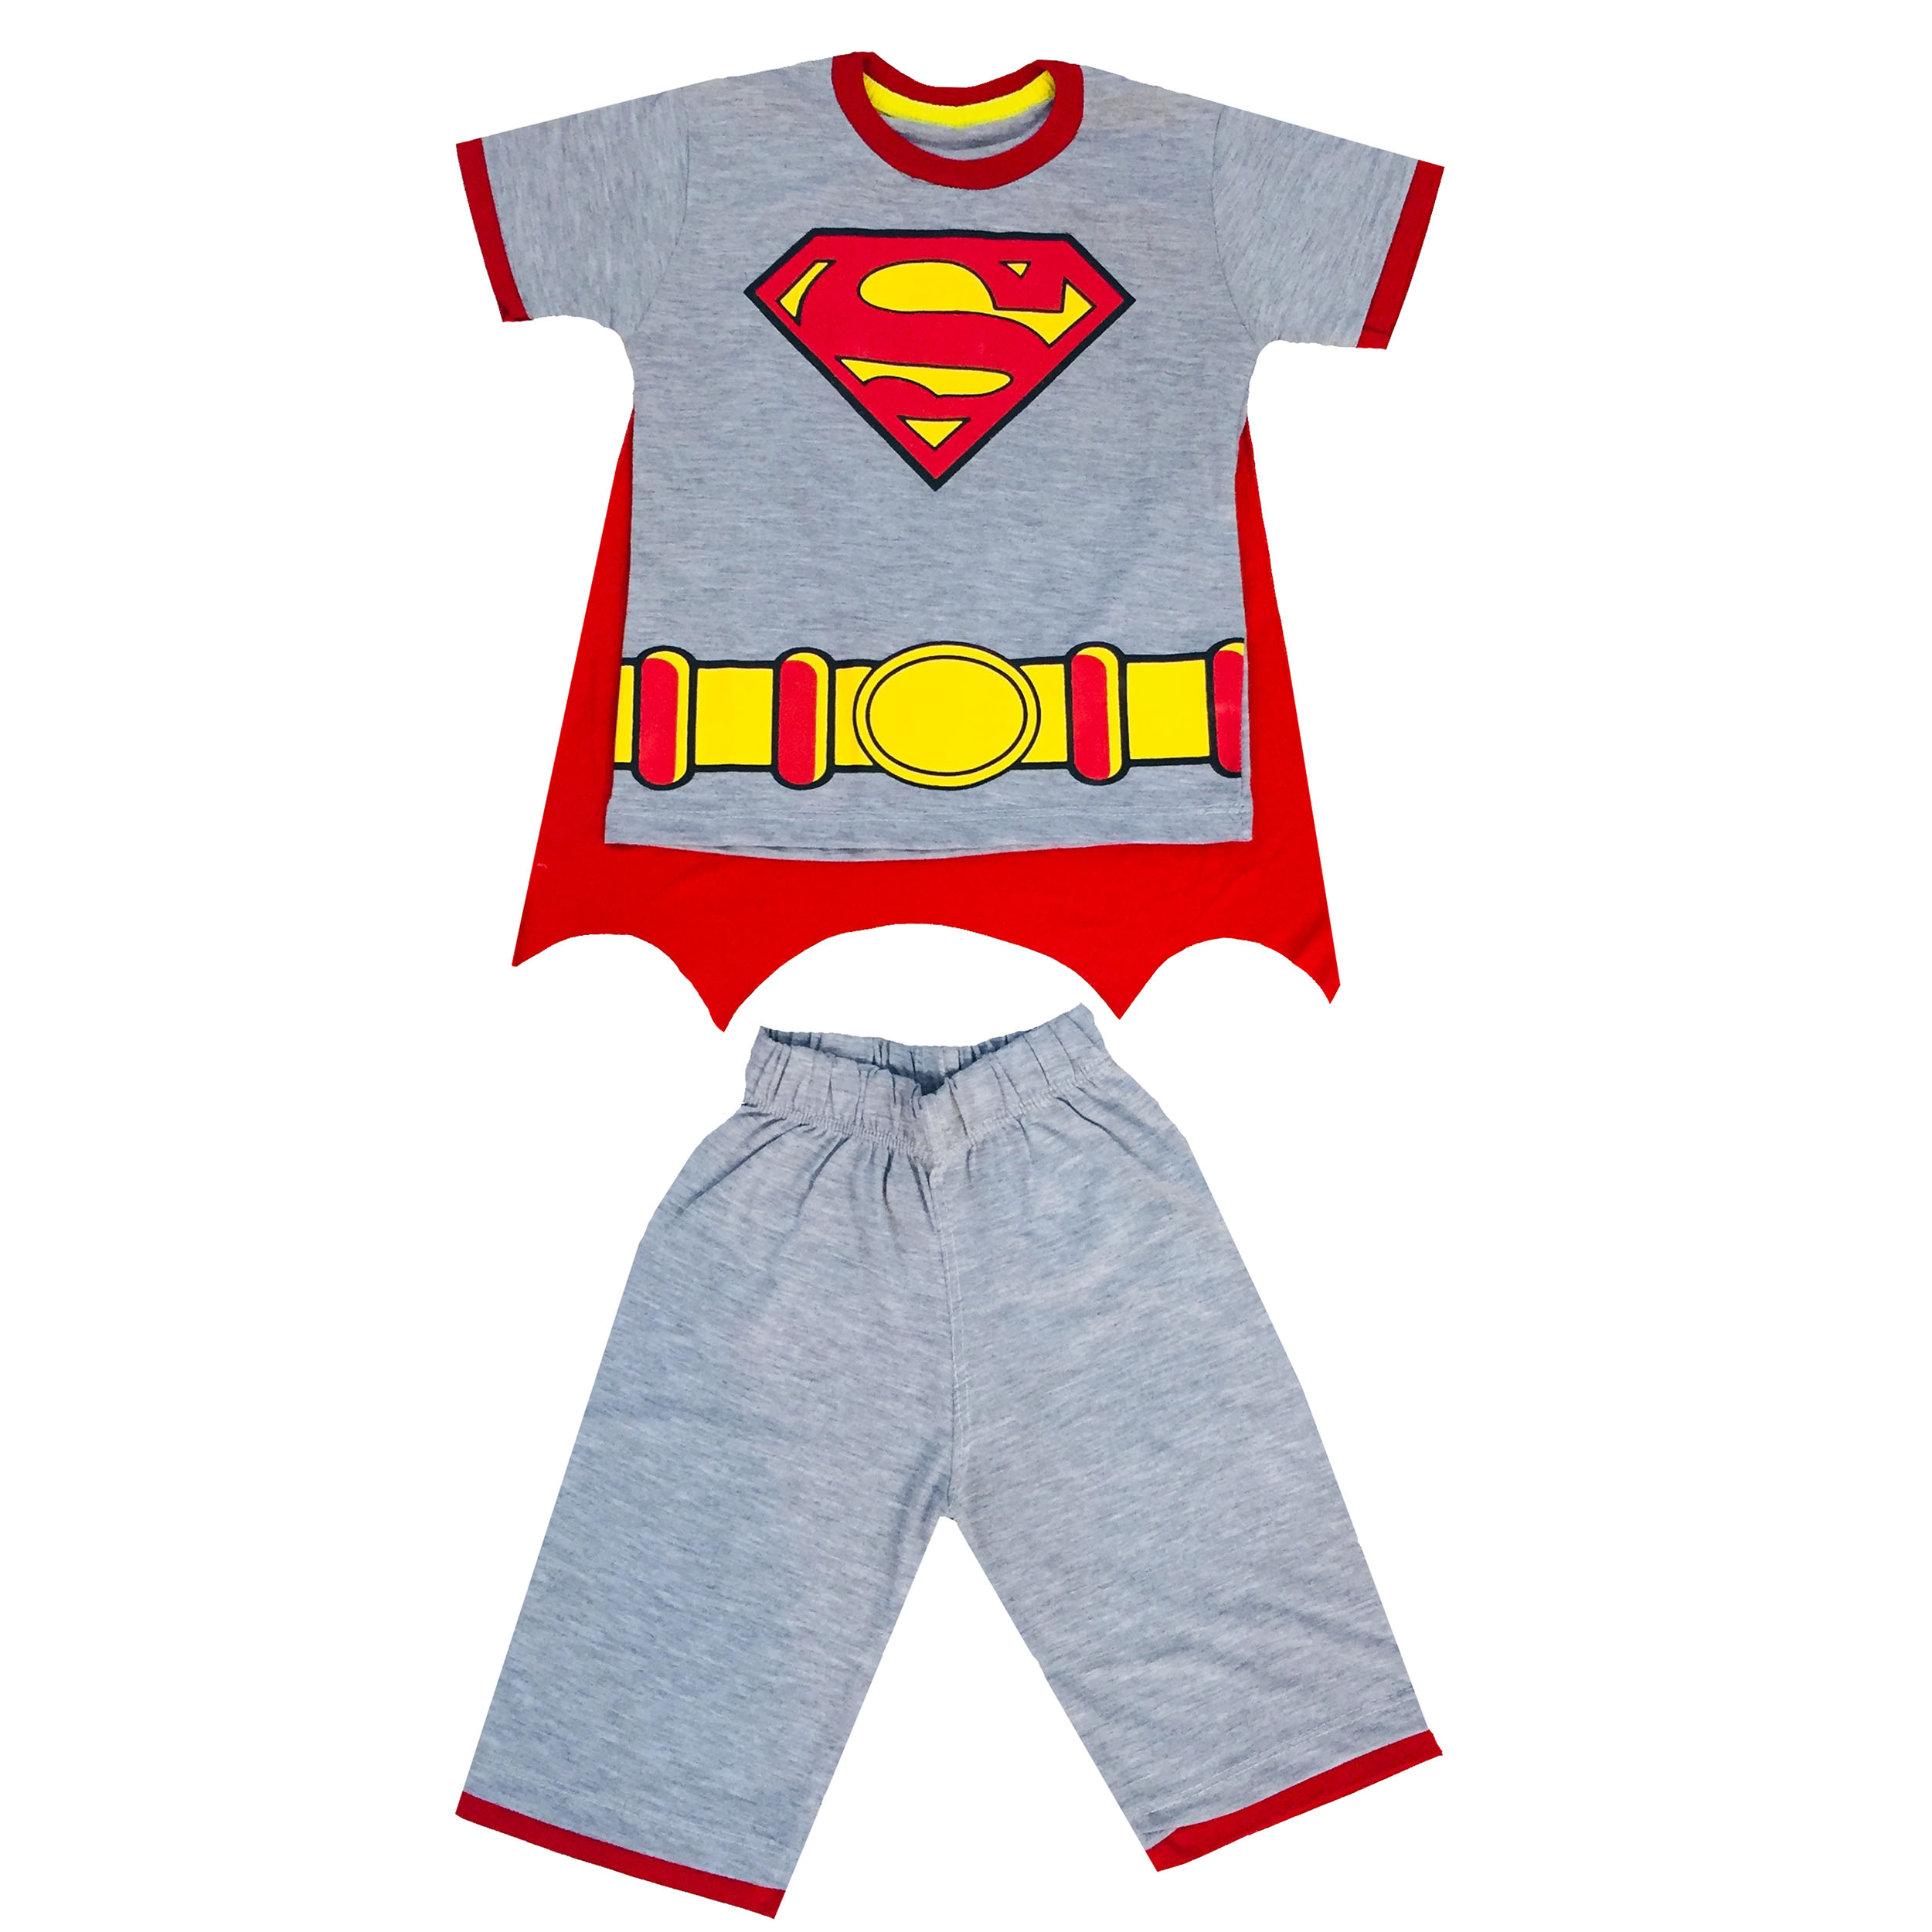 ست تی شرت و شلوارک پسرانه  طرح سوپرمن کد 19